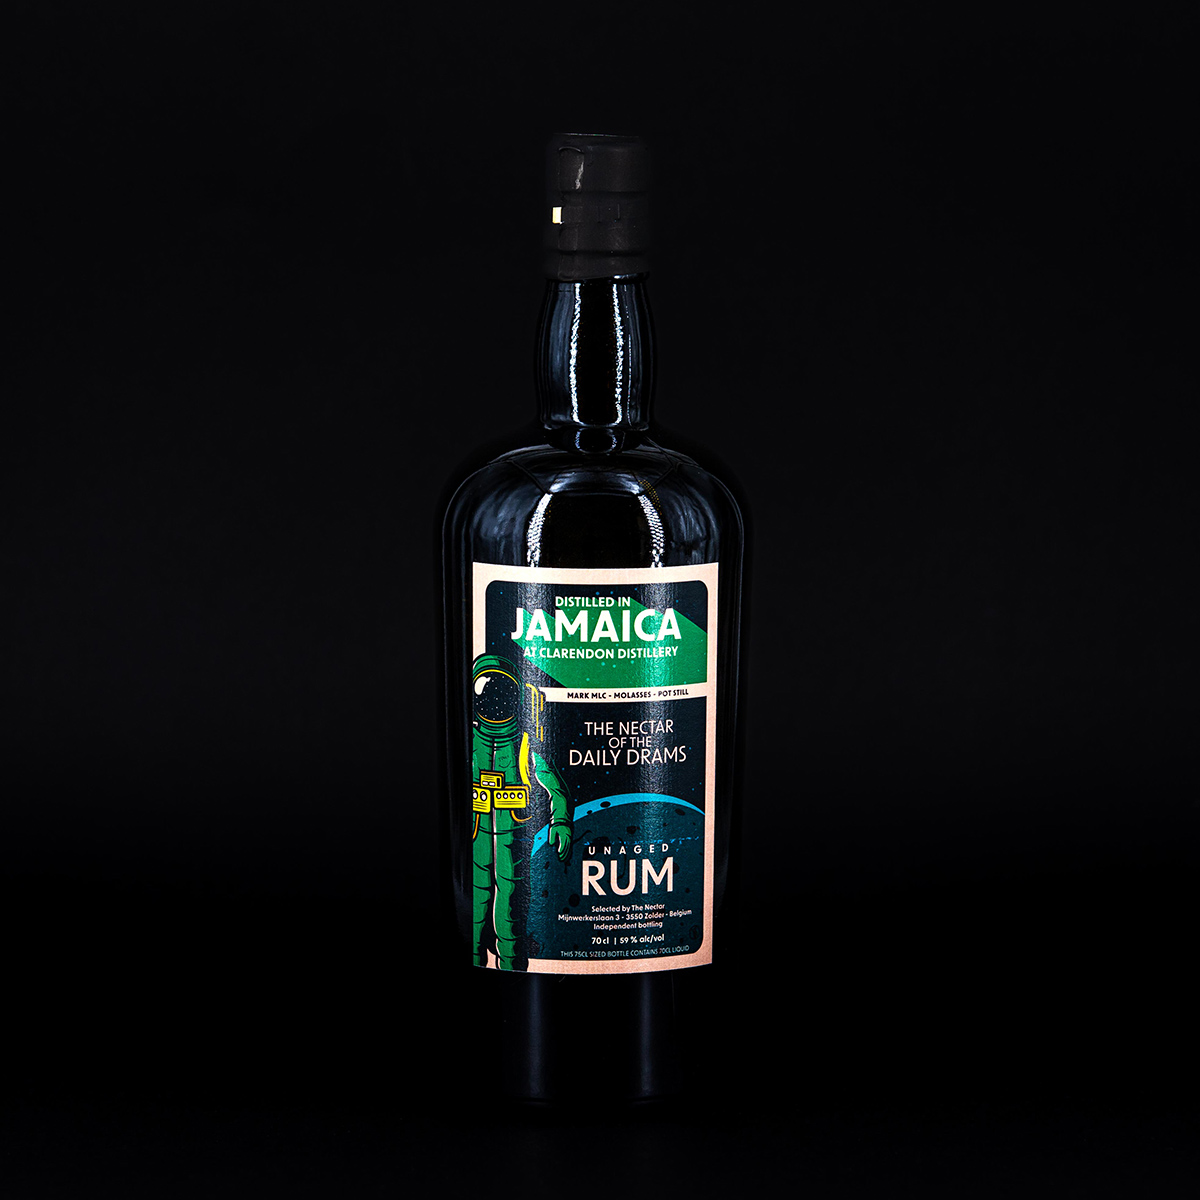 Rhum J.M. Terroir Volcanique Rum